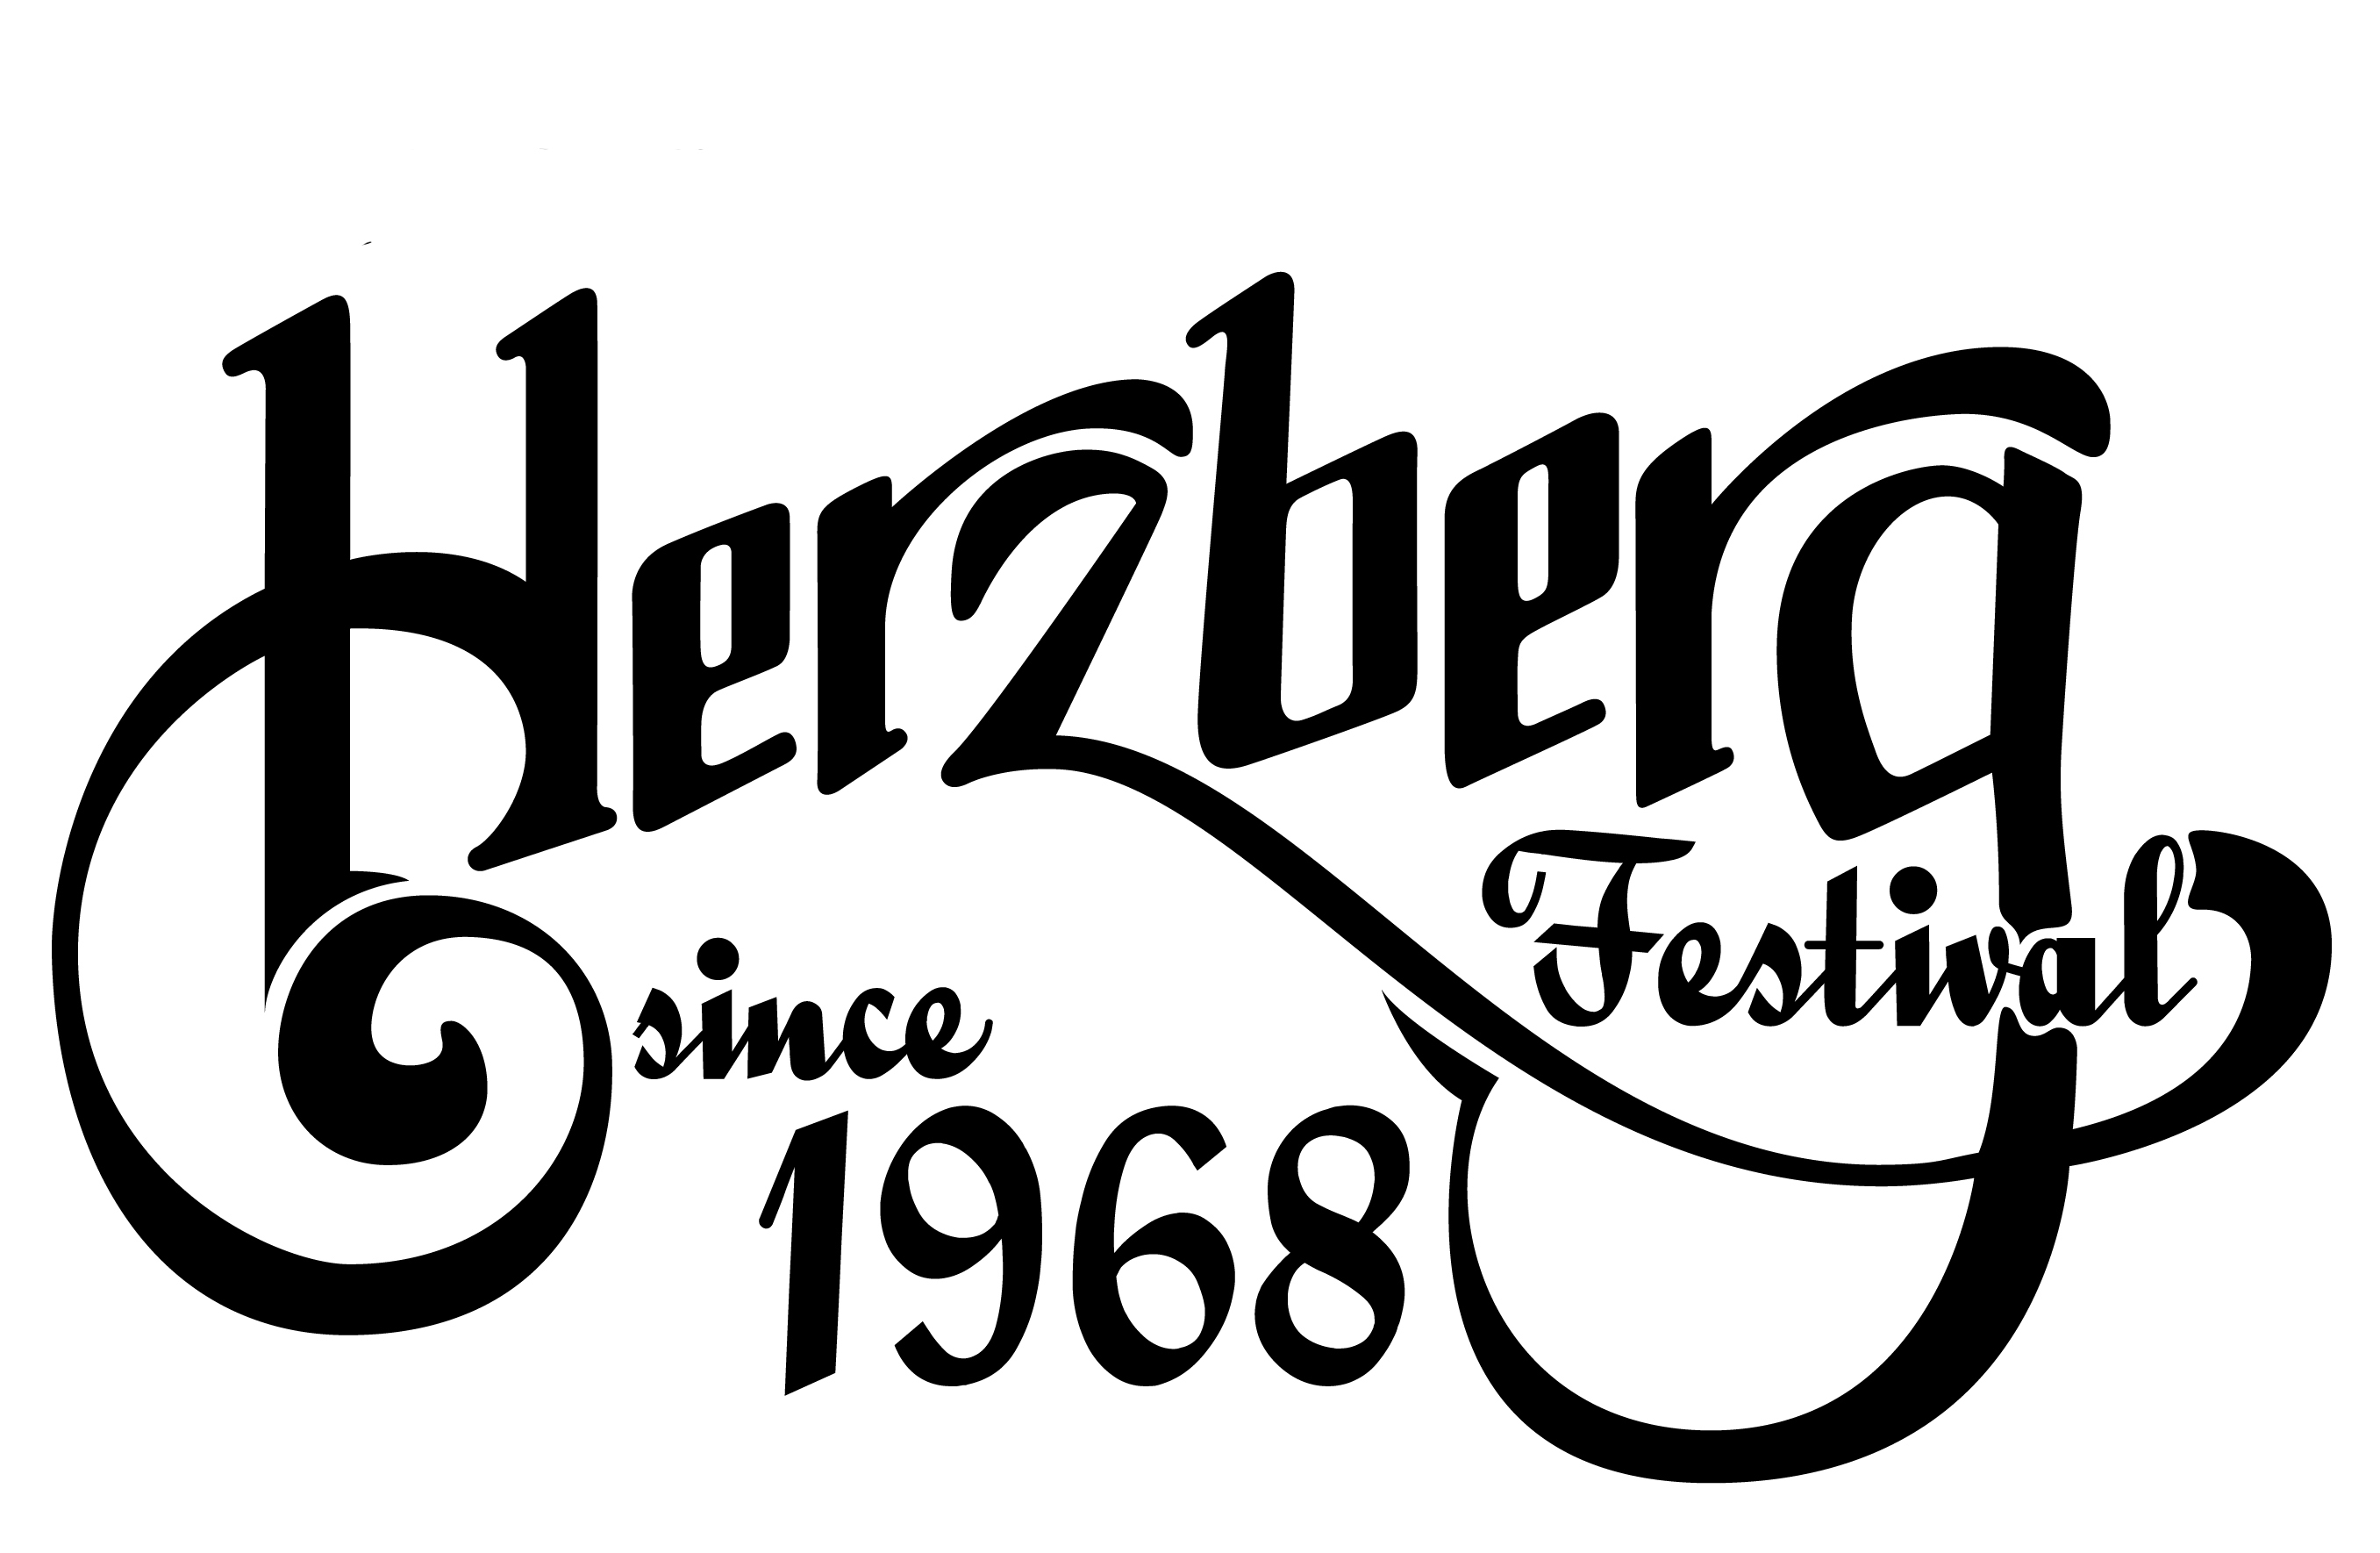 Herzberg Festival Online Shop